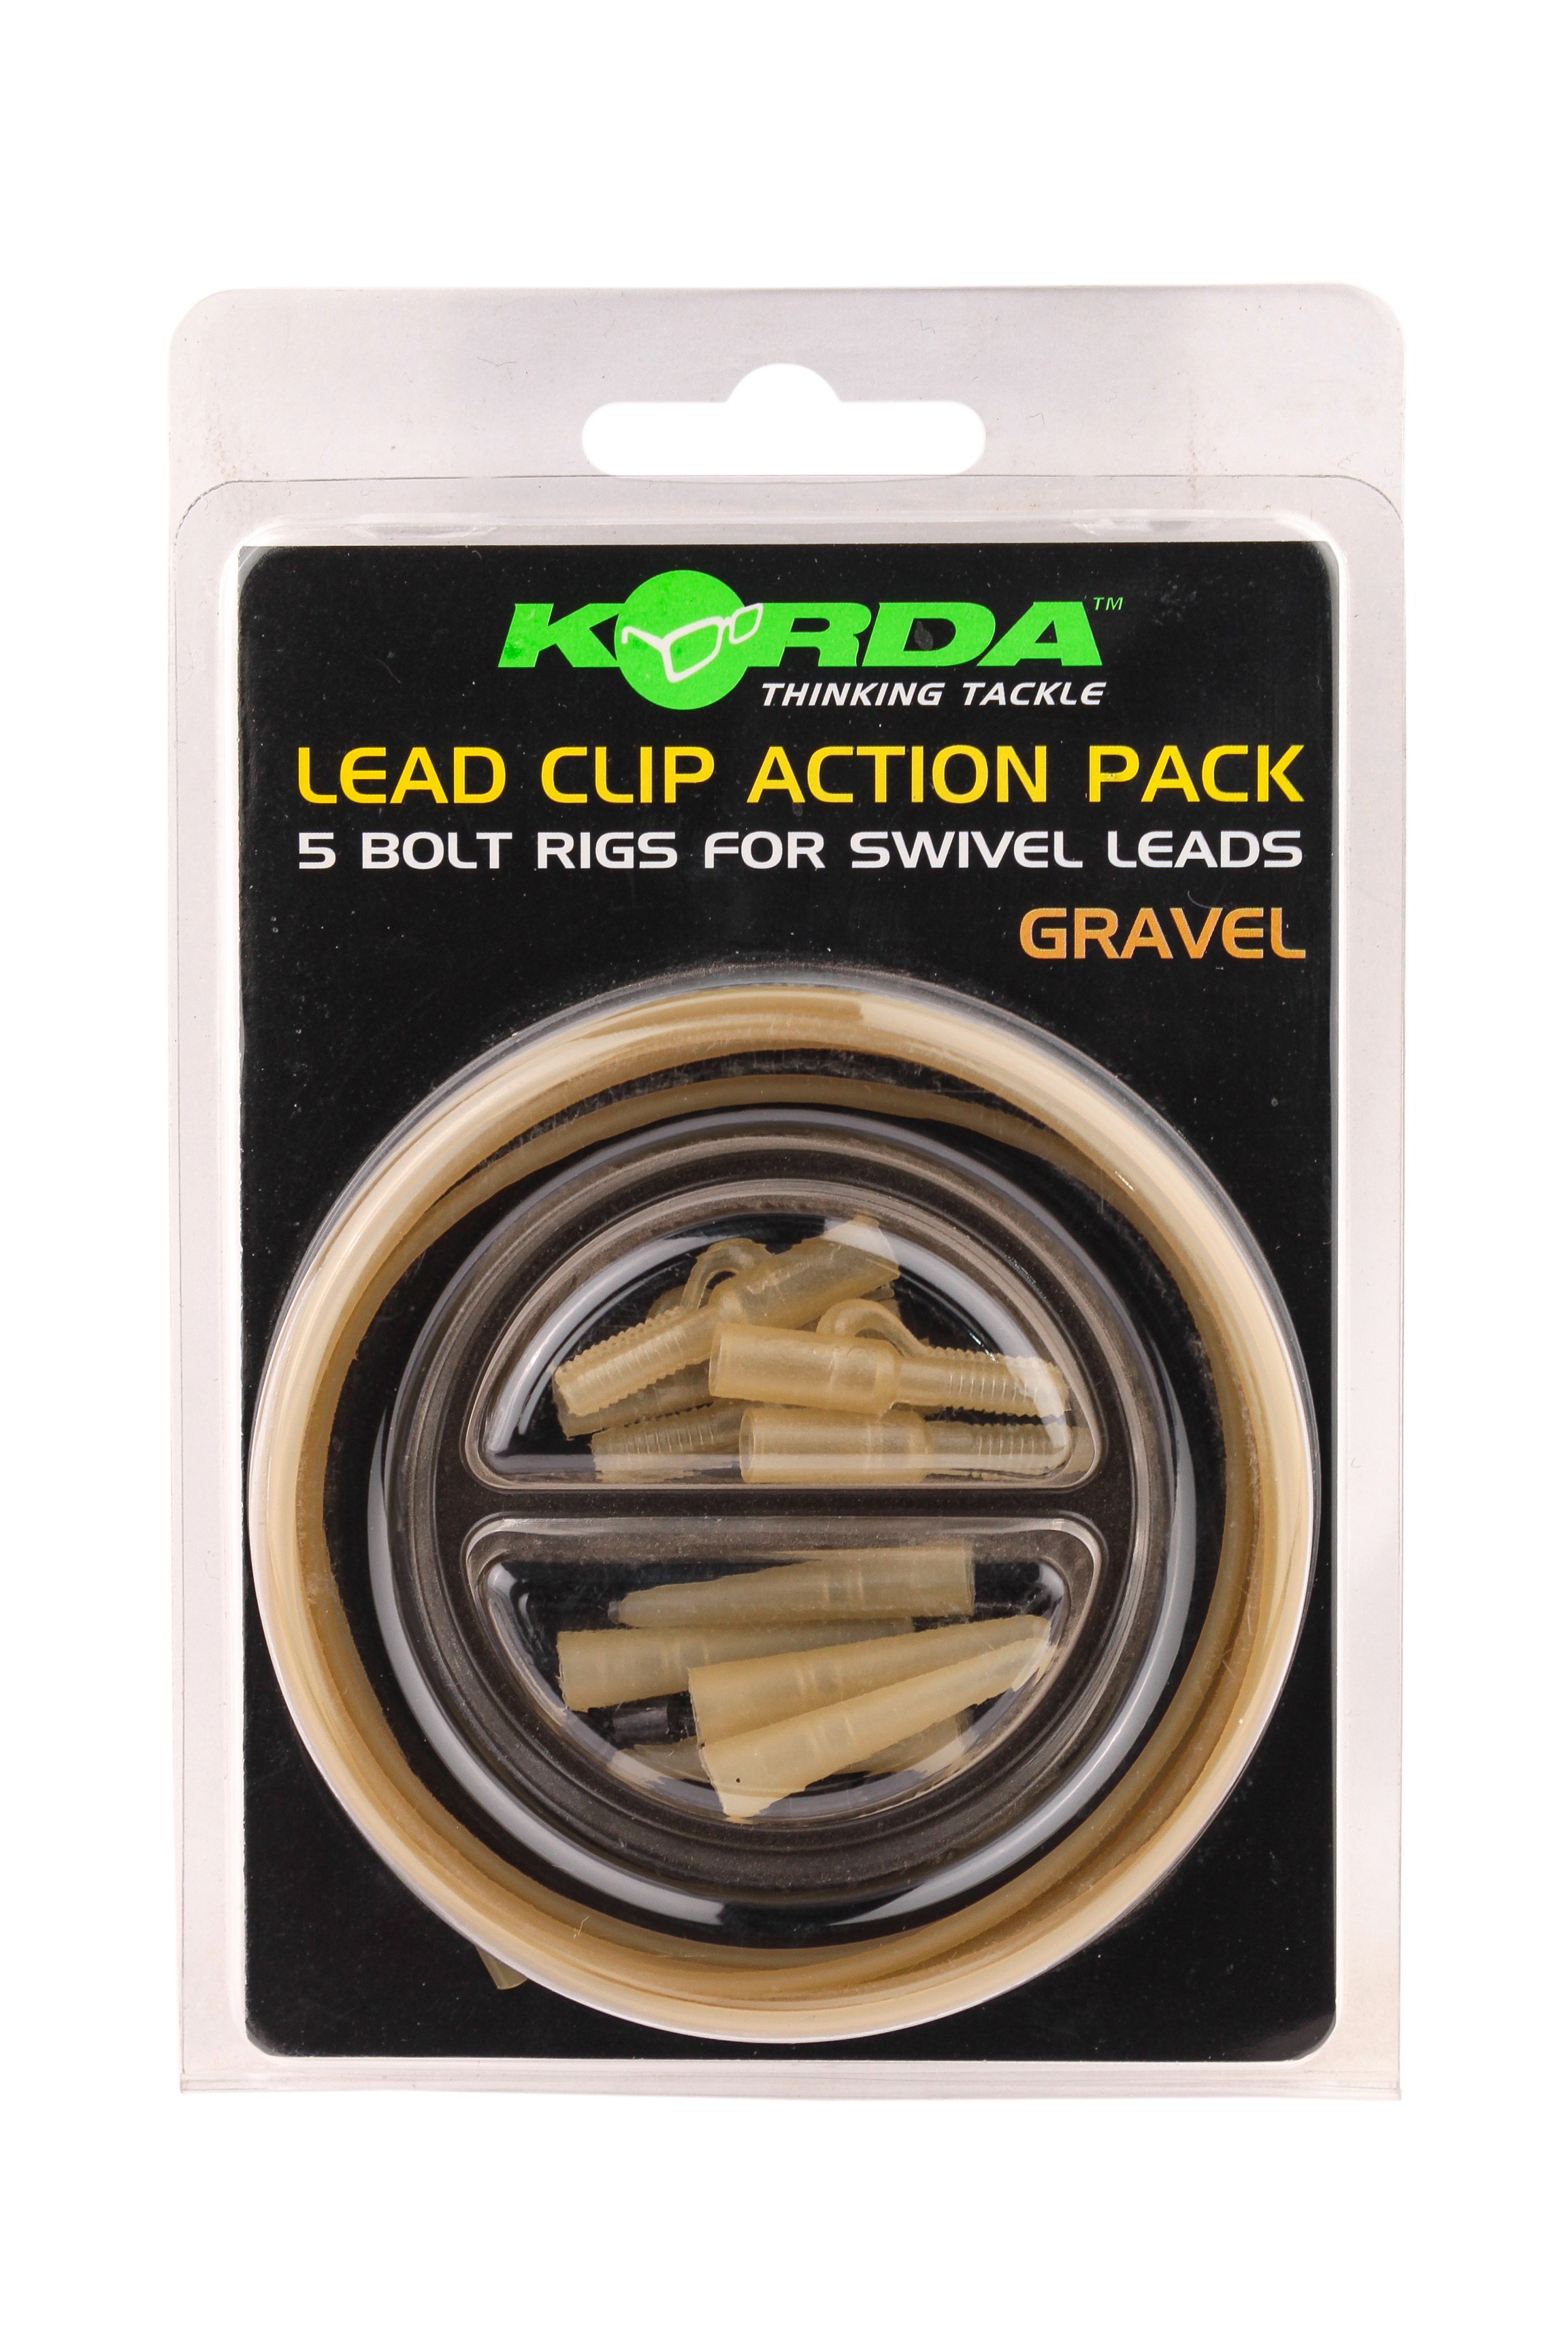 Клипса Korda Lead clip action pack gravel на трубке - фото 1